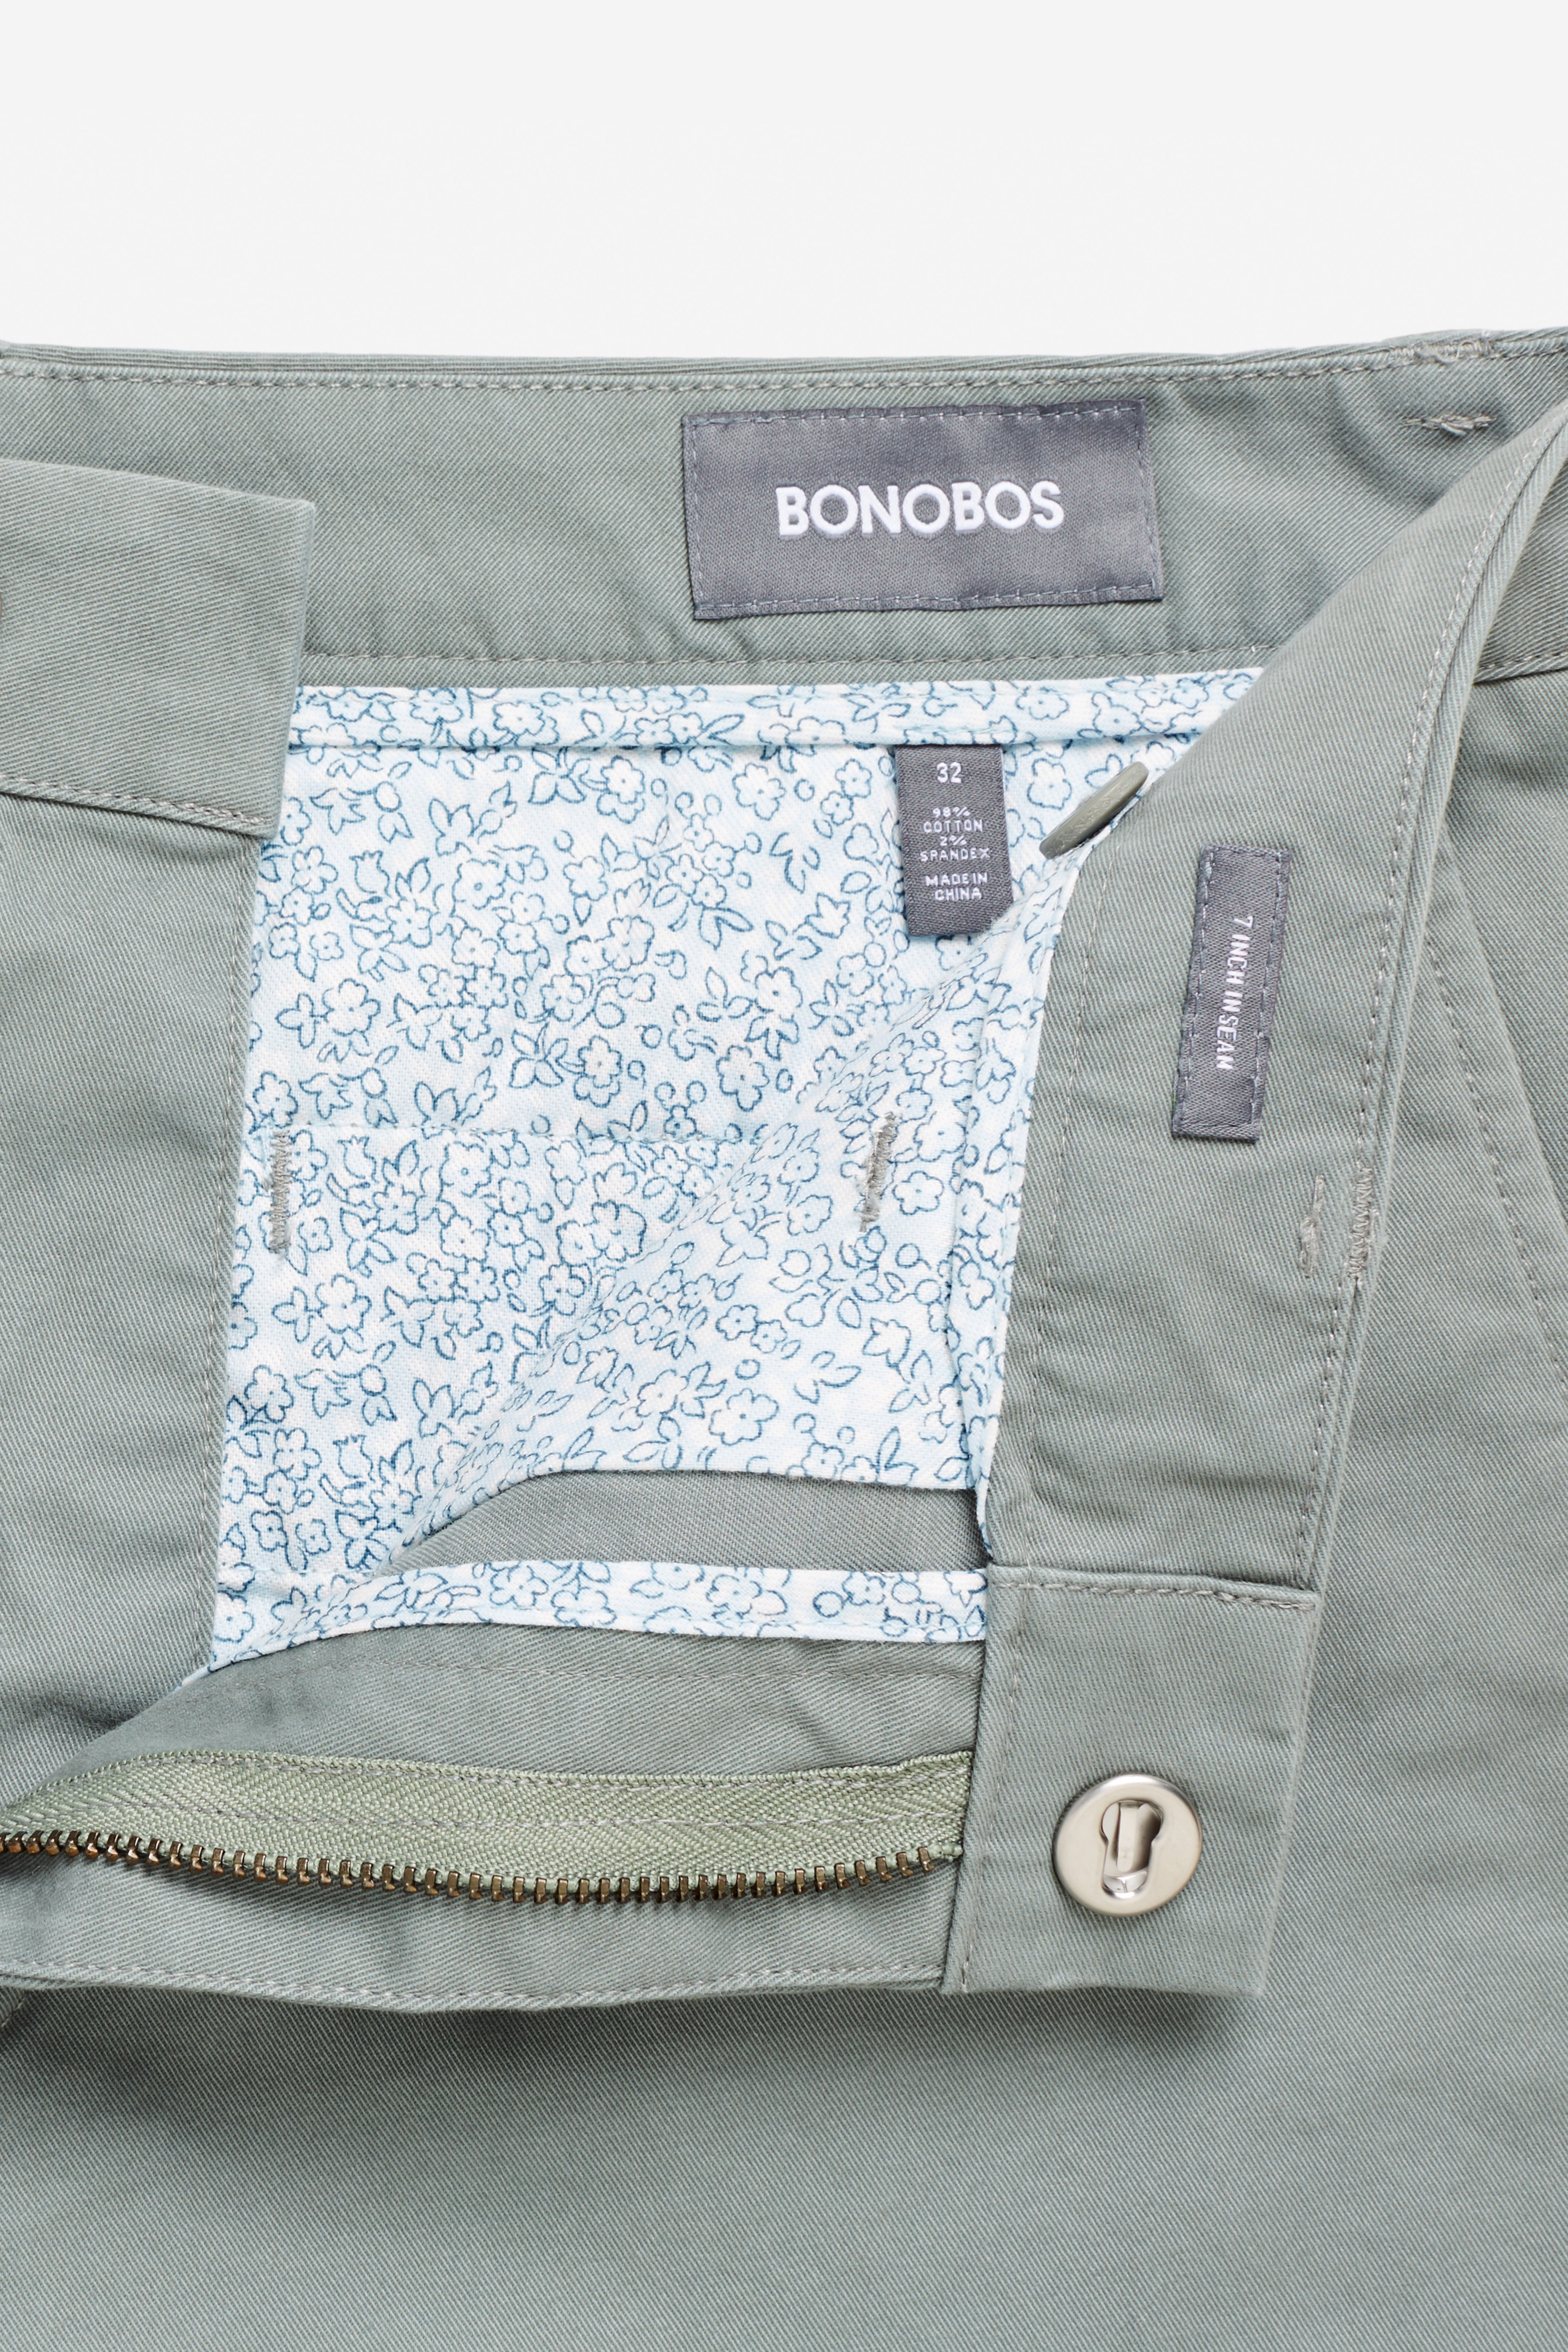 $68 New Bonobos Washed Chinos 9" Shorts ~ Gargoyle Grey Gray~NEW~ Size 32 